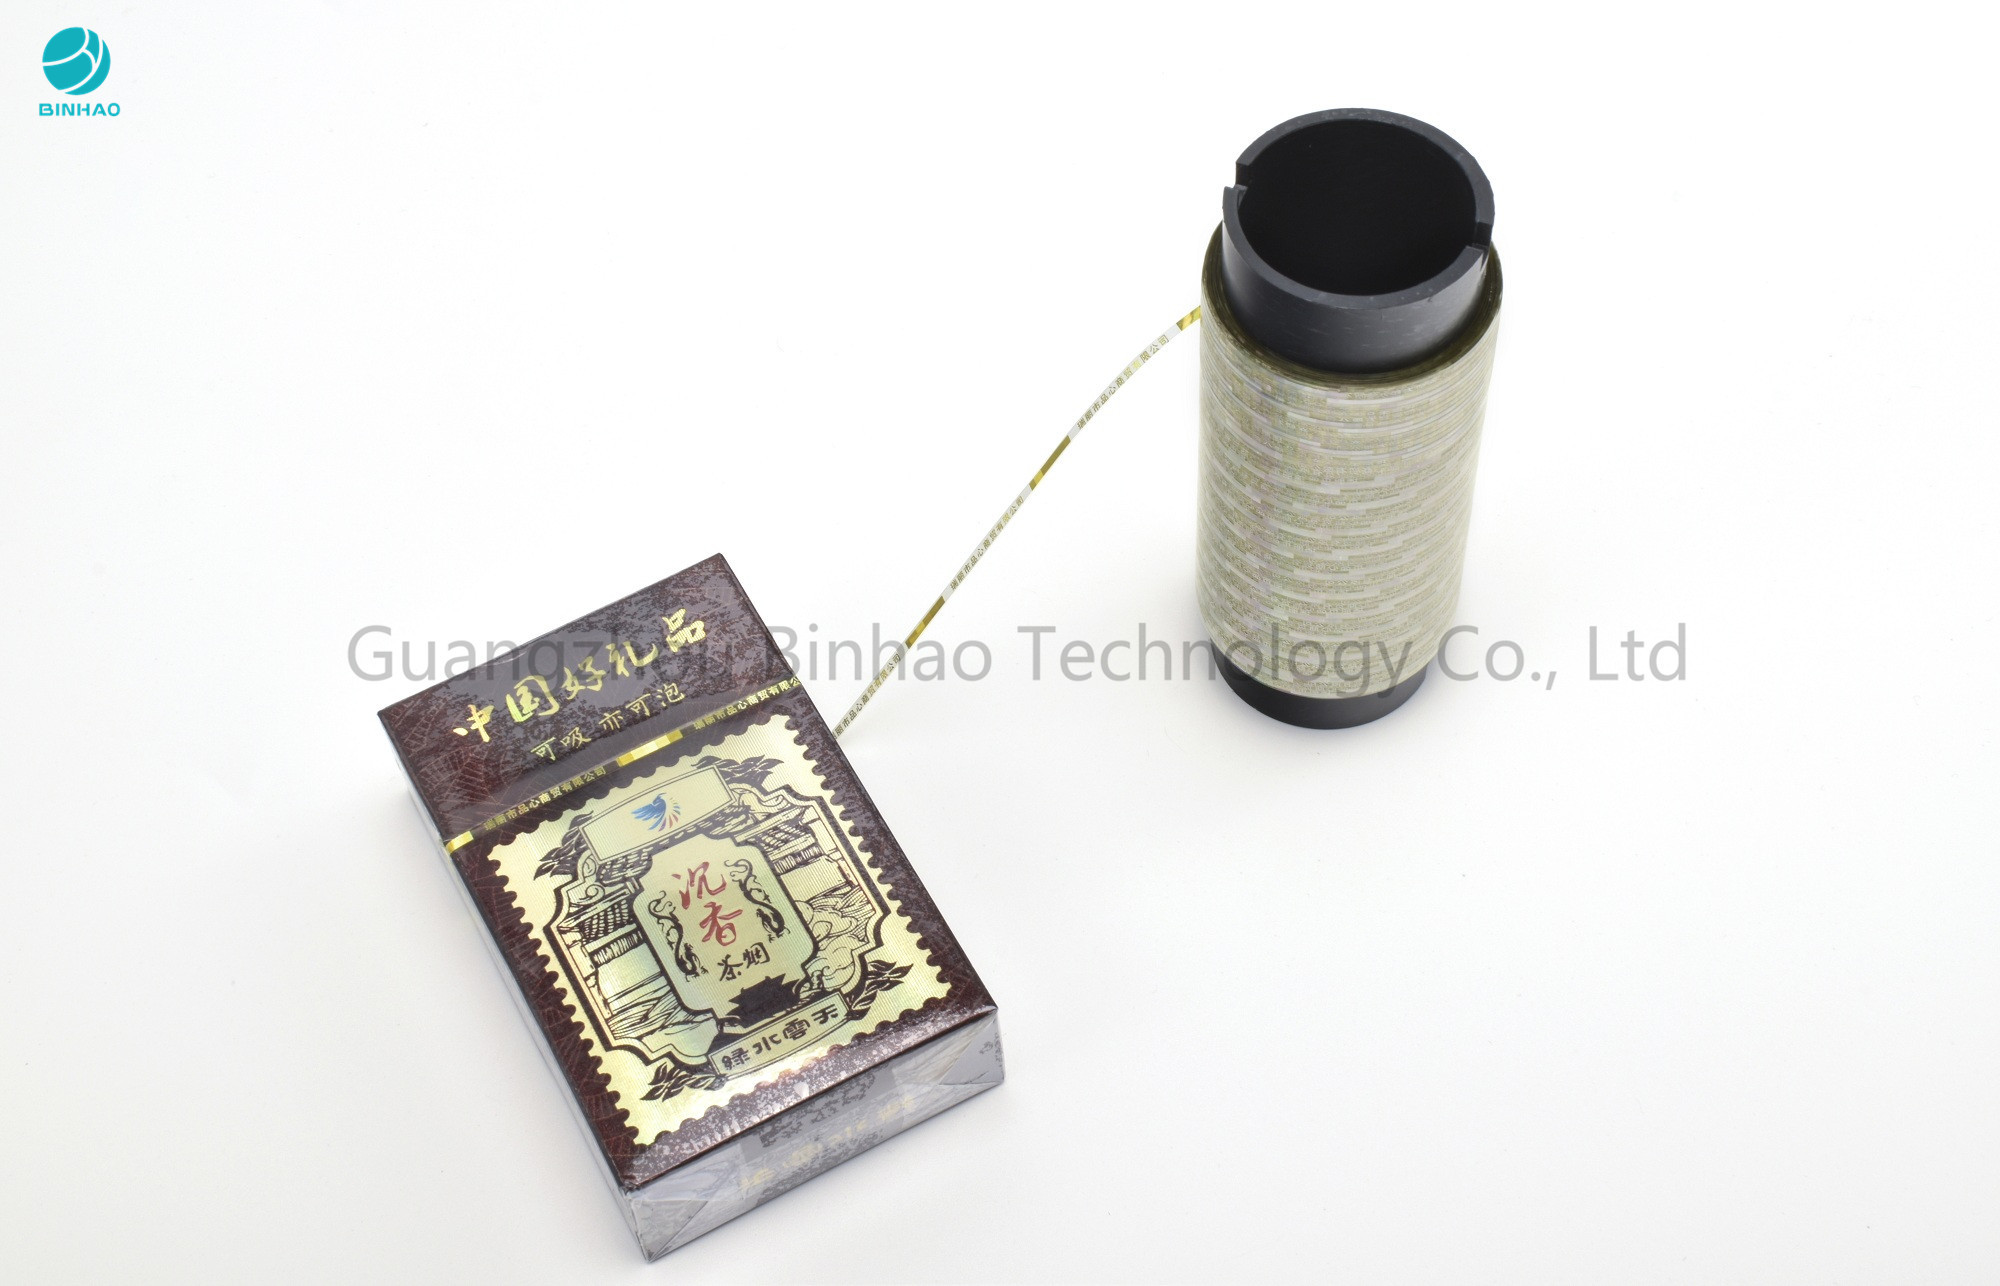 Tear Strip Tape Holografis Emas Tinggi Untuk Kemasan Kotak Rokok Dalam Bahan MOPP 40 Mikron